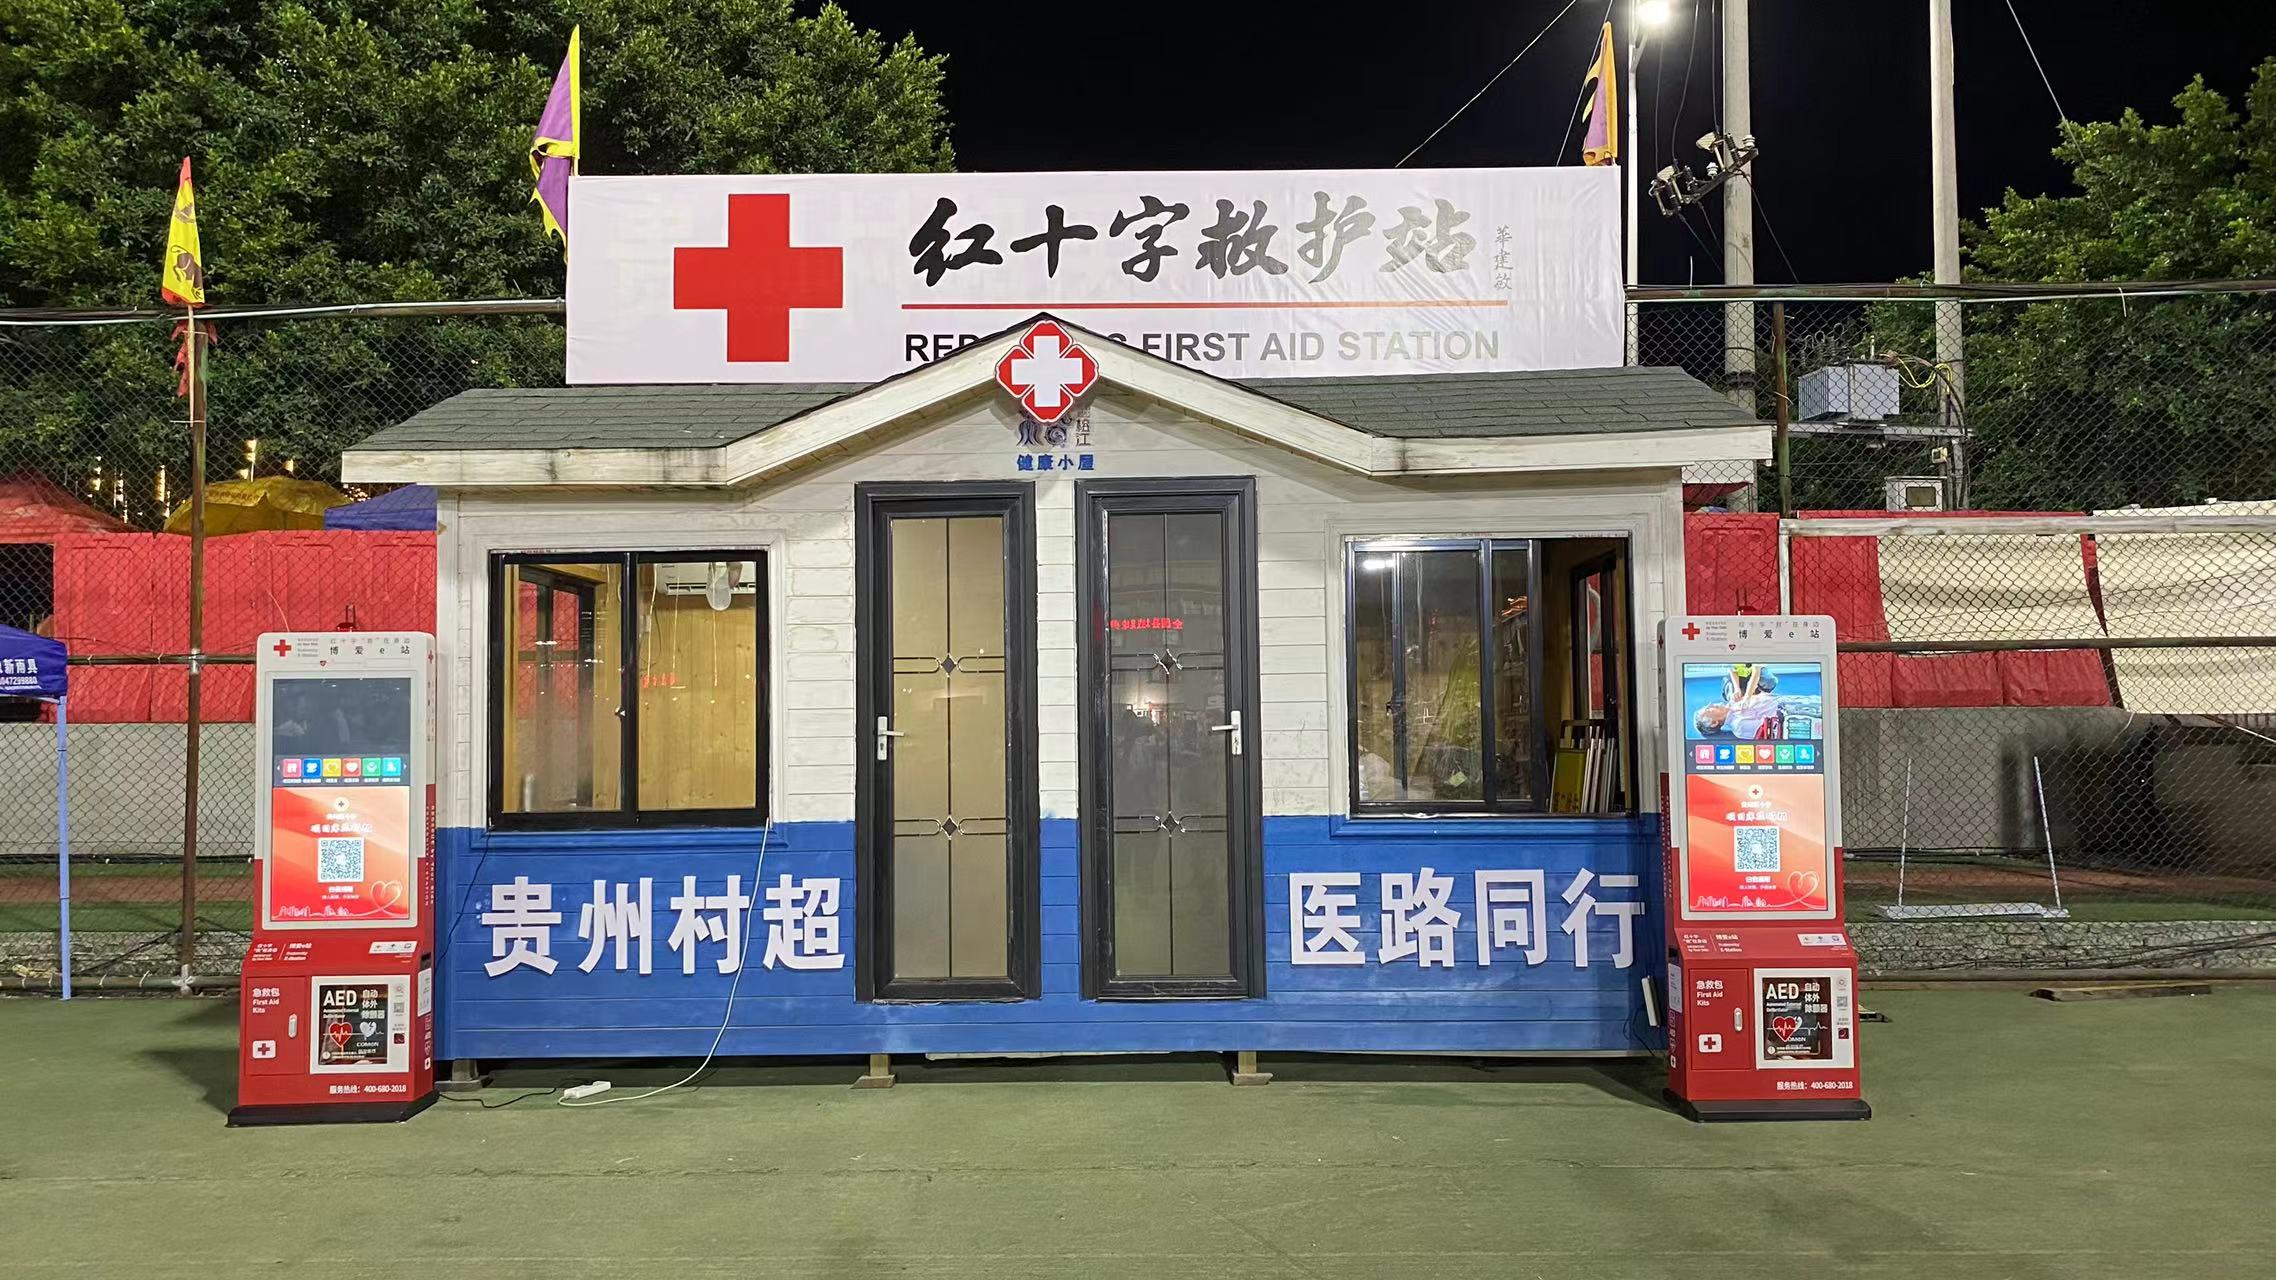 贵州红基会“守护生命博爱AED”项目筹款超十万元